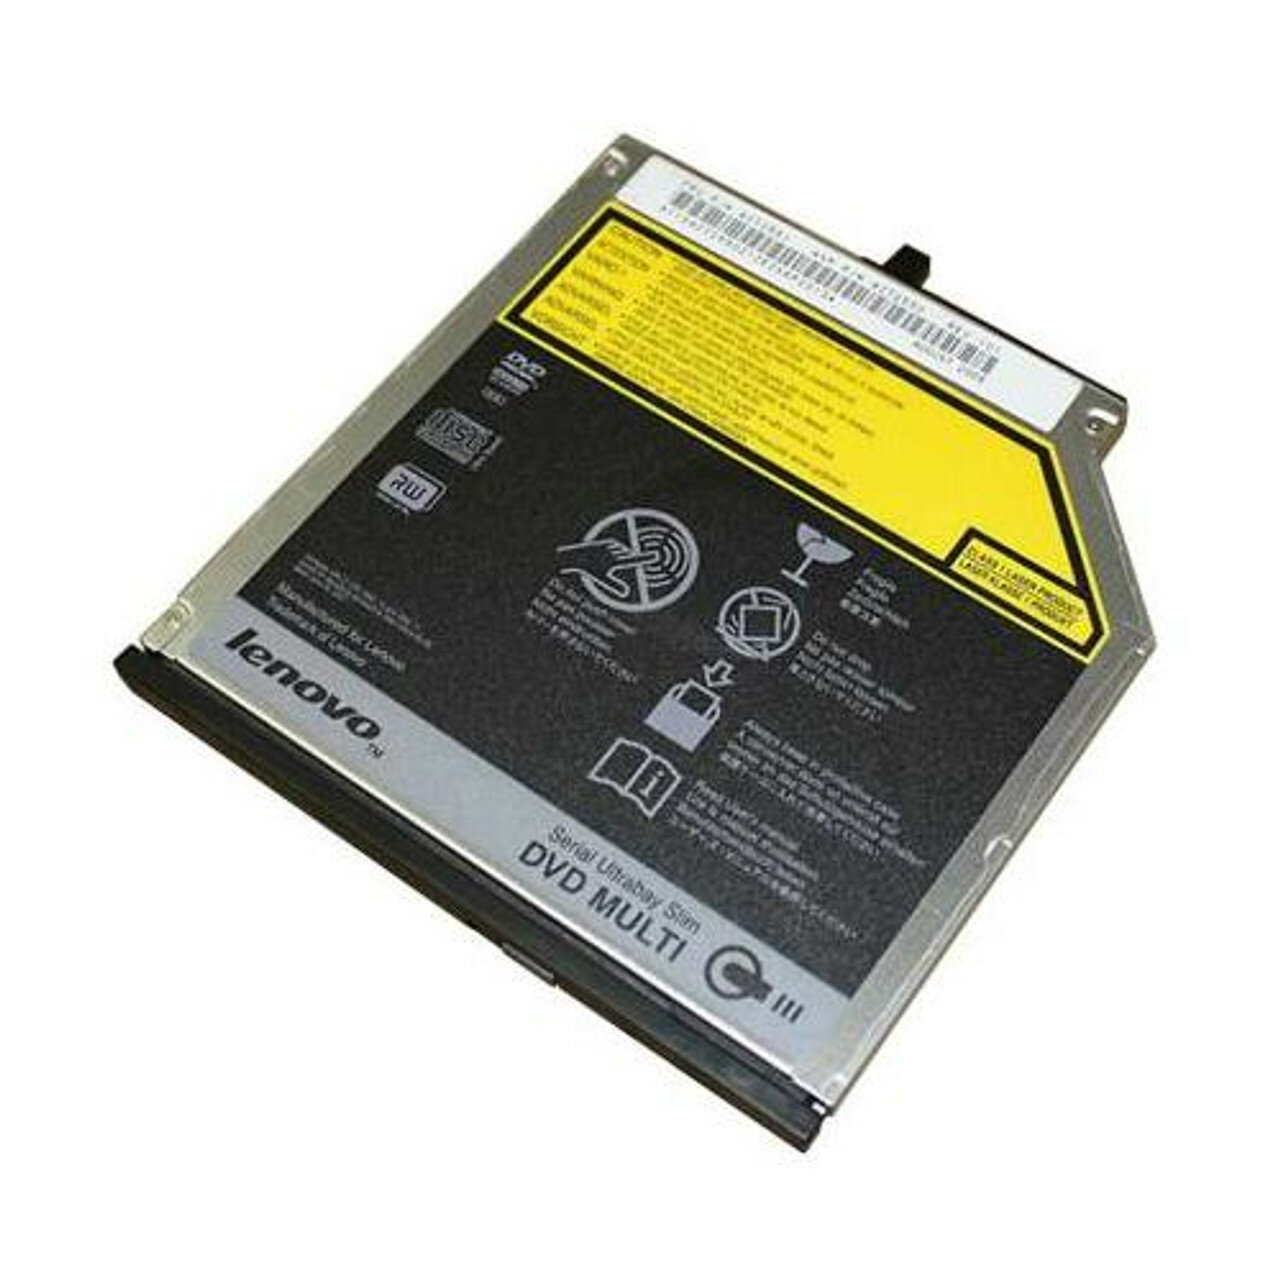 Оптический привод ThinkPad Ultrabay DVD Burner 9.5mm Slim Drive III (0A65626)